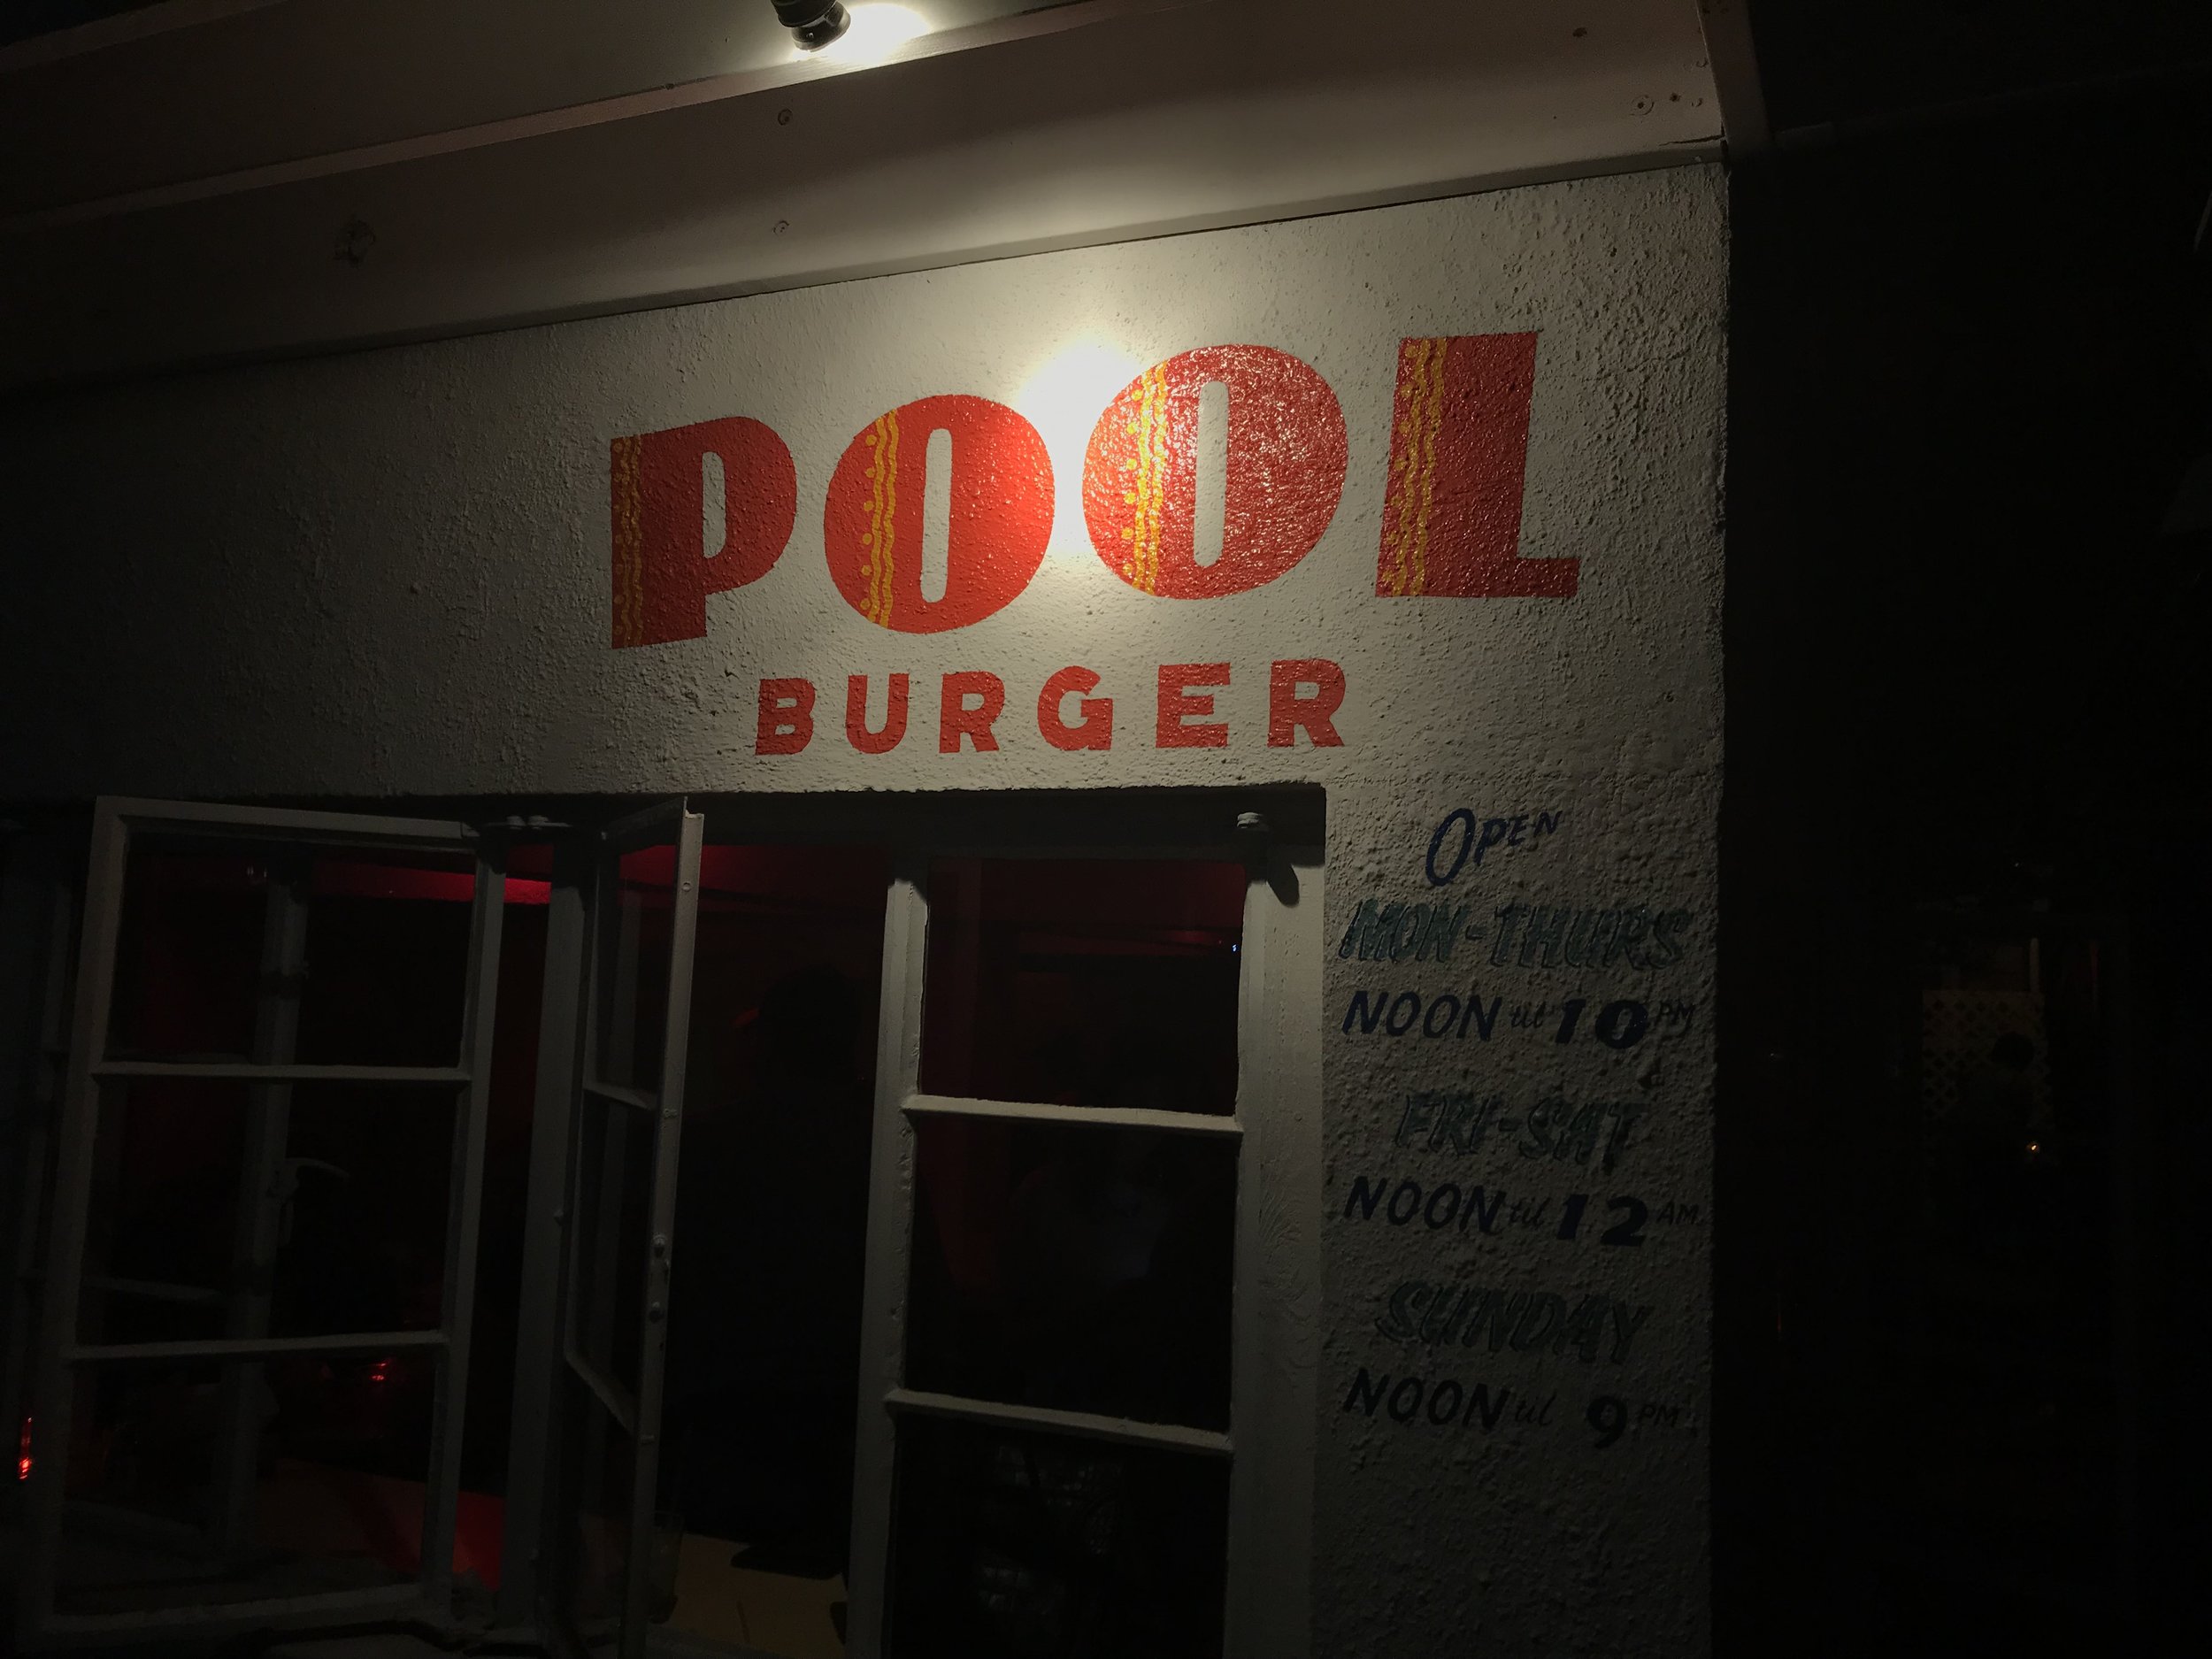 Pool Burger